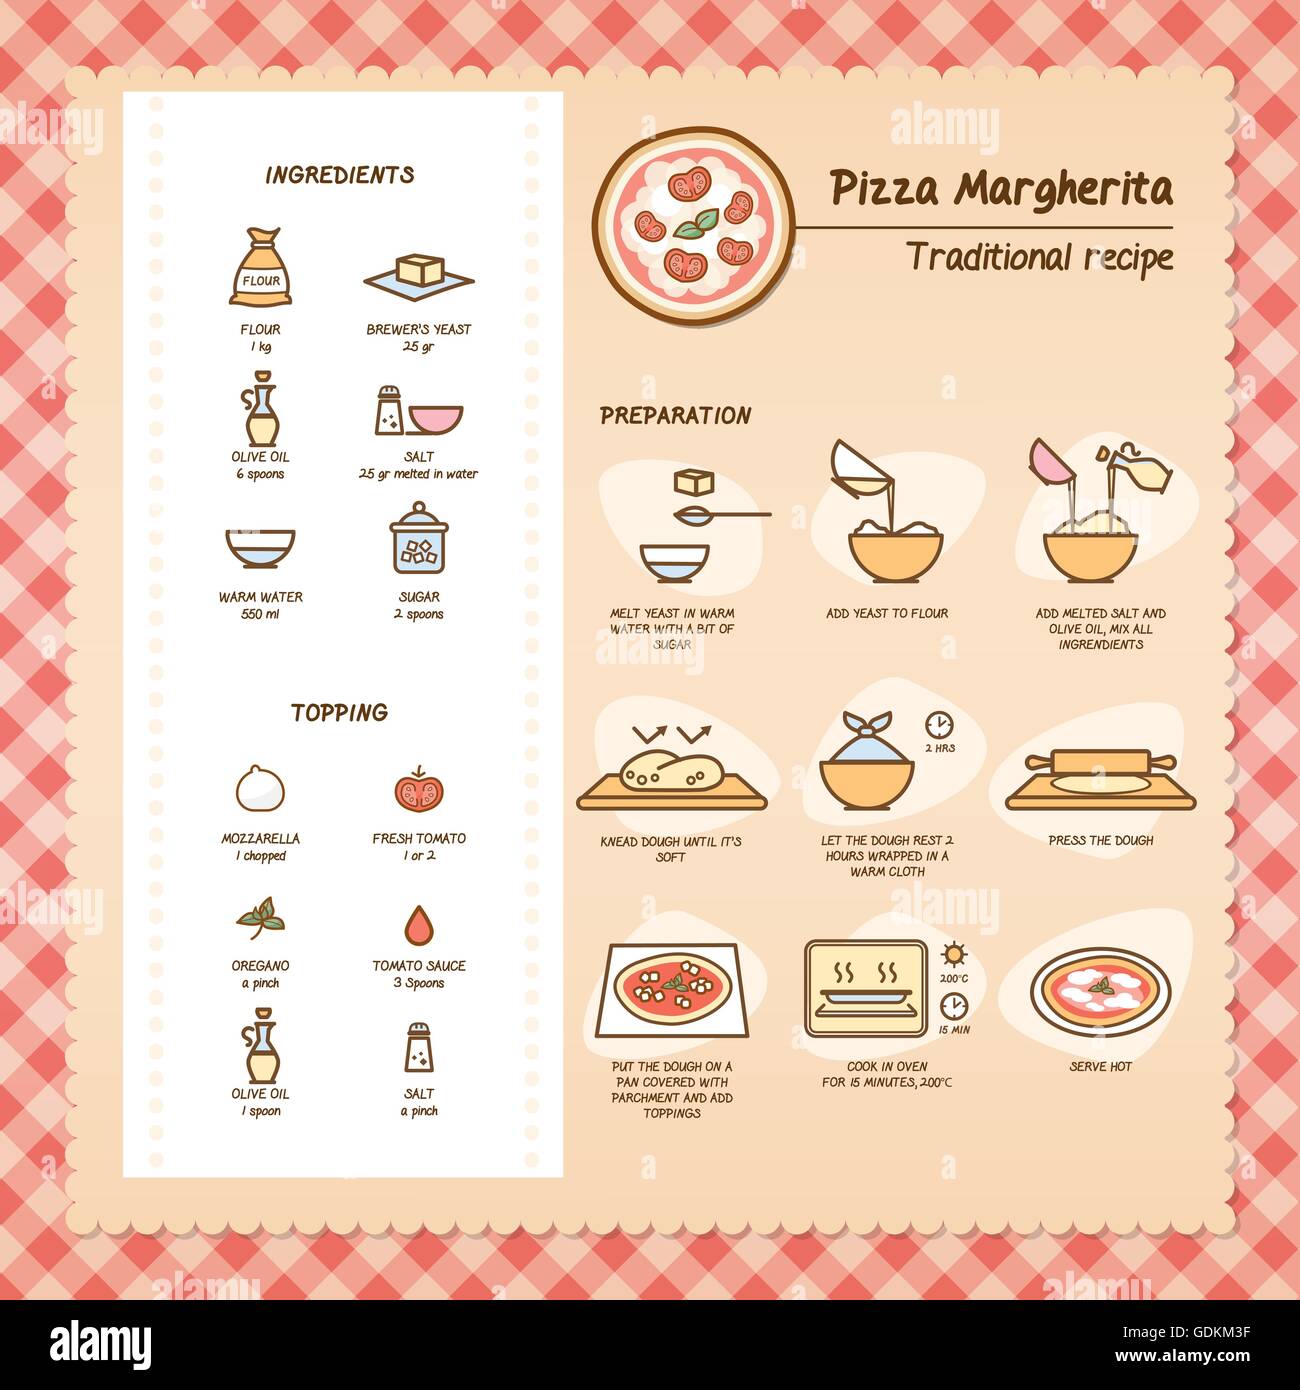 La pizza margherita tradizionale ricetta con ingredienti e preparazione Illustrazione Vettoriale